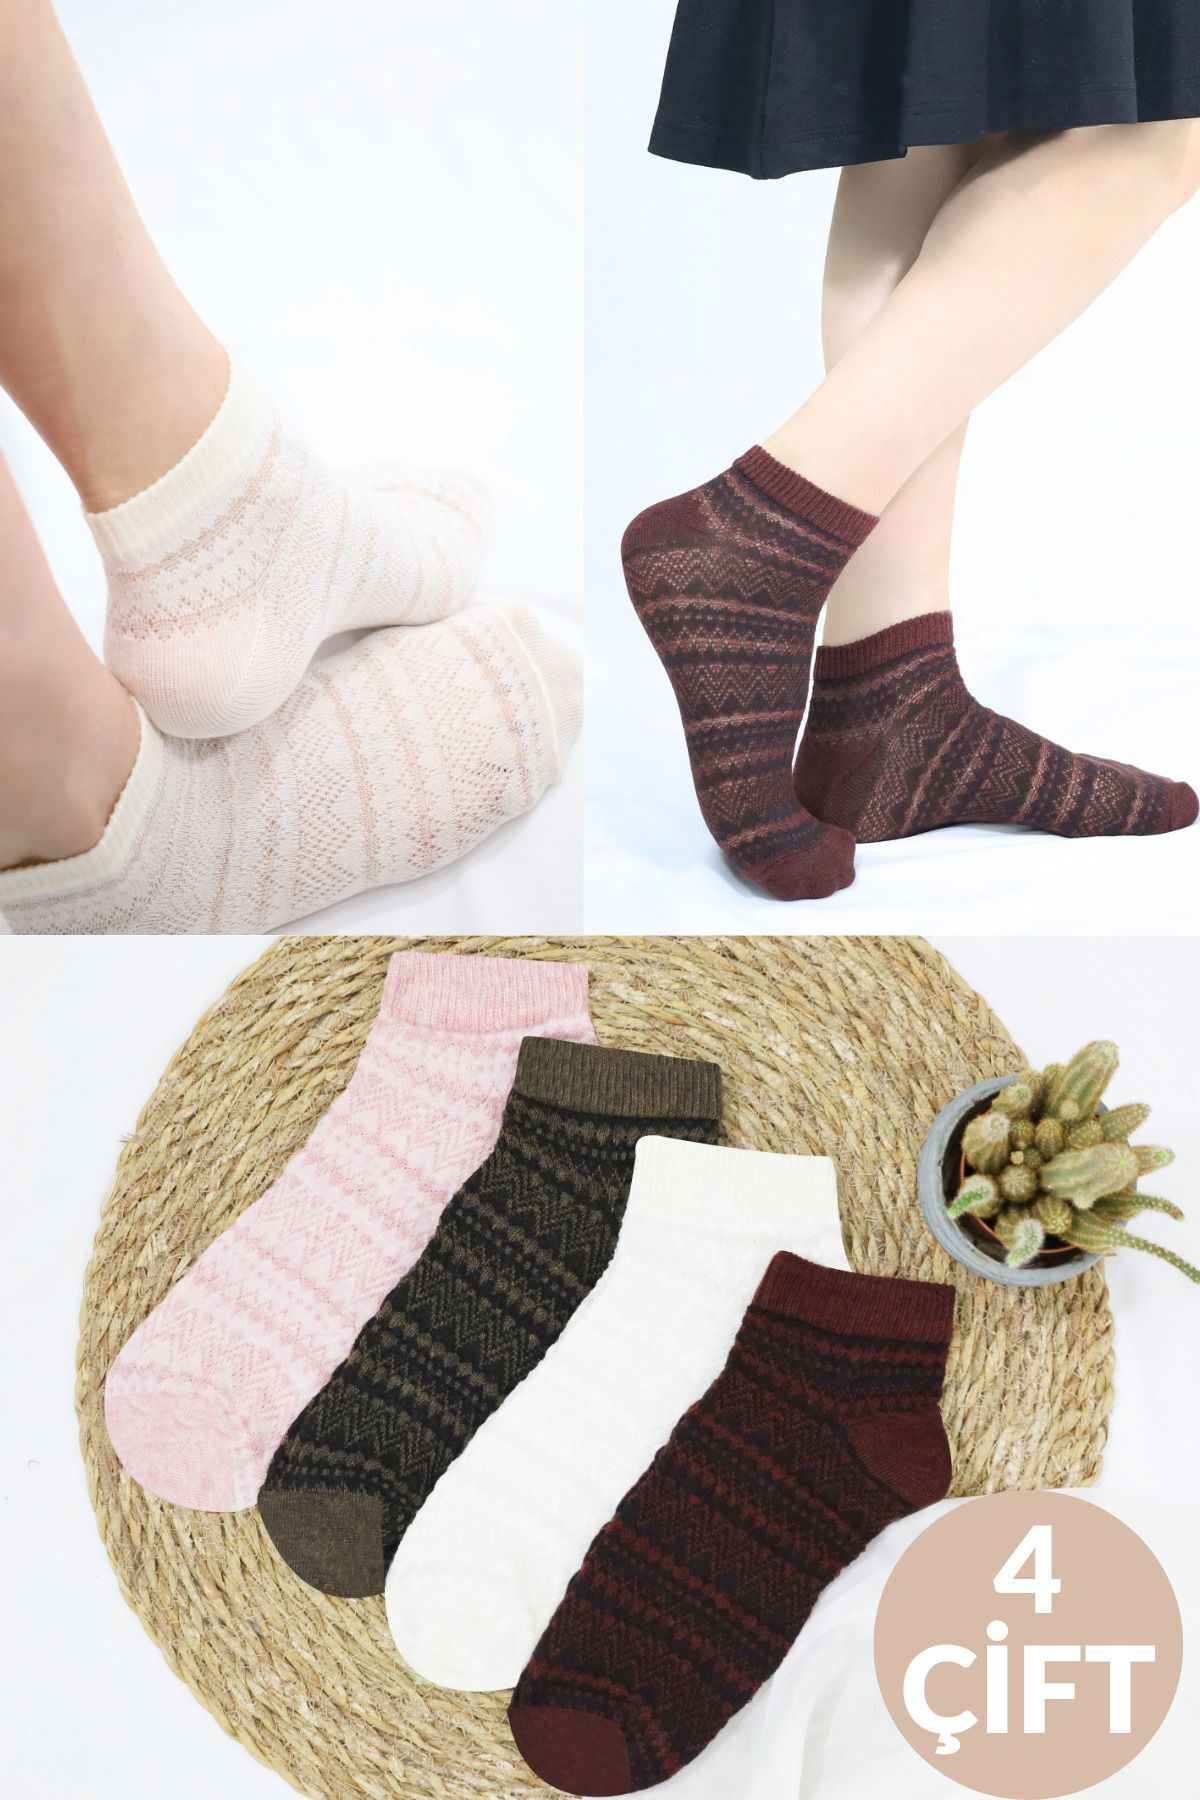 Miss Lana Kadın Çorap Renkli (4 ÇİFT) Likralı Pamuklu Yıldızlı Tül Penye Patik Kadın Çorabı